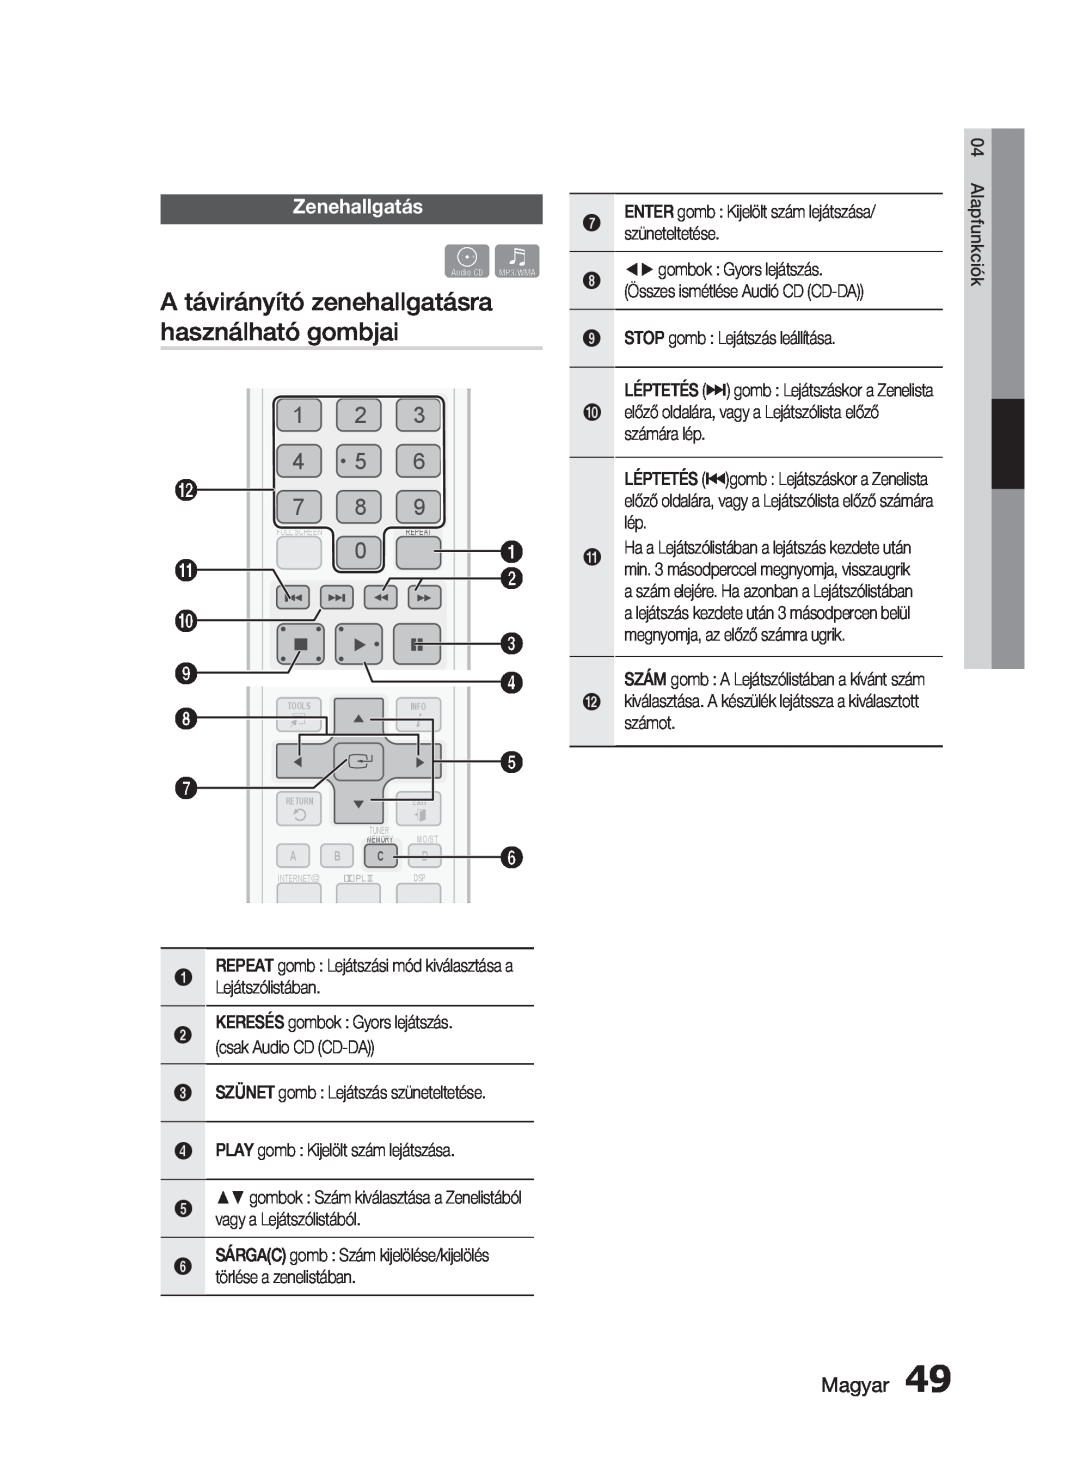 Samsung HT-C5900/XEE, HT-C5900/XEF manual A távirányító zenehallgatásra használható gombjai, Zenehallgatás, Magyar 